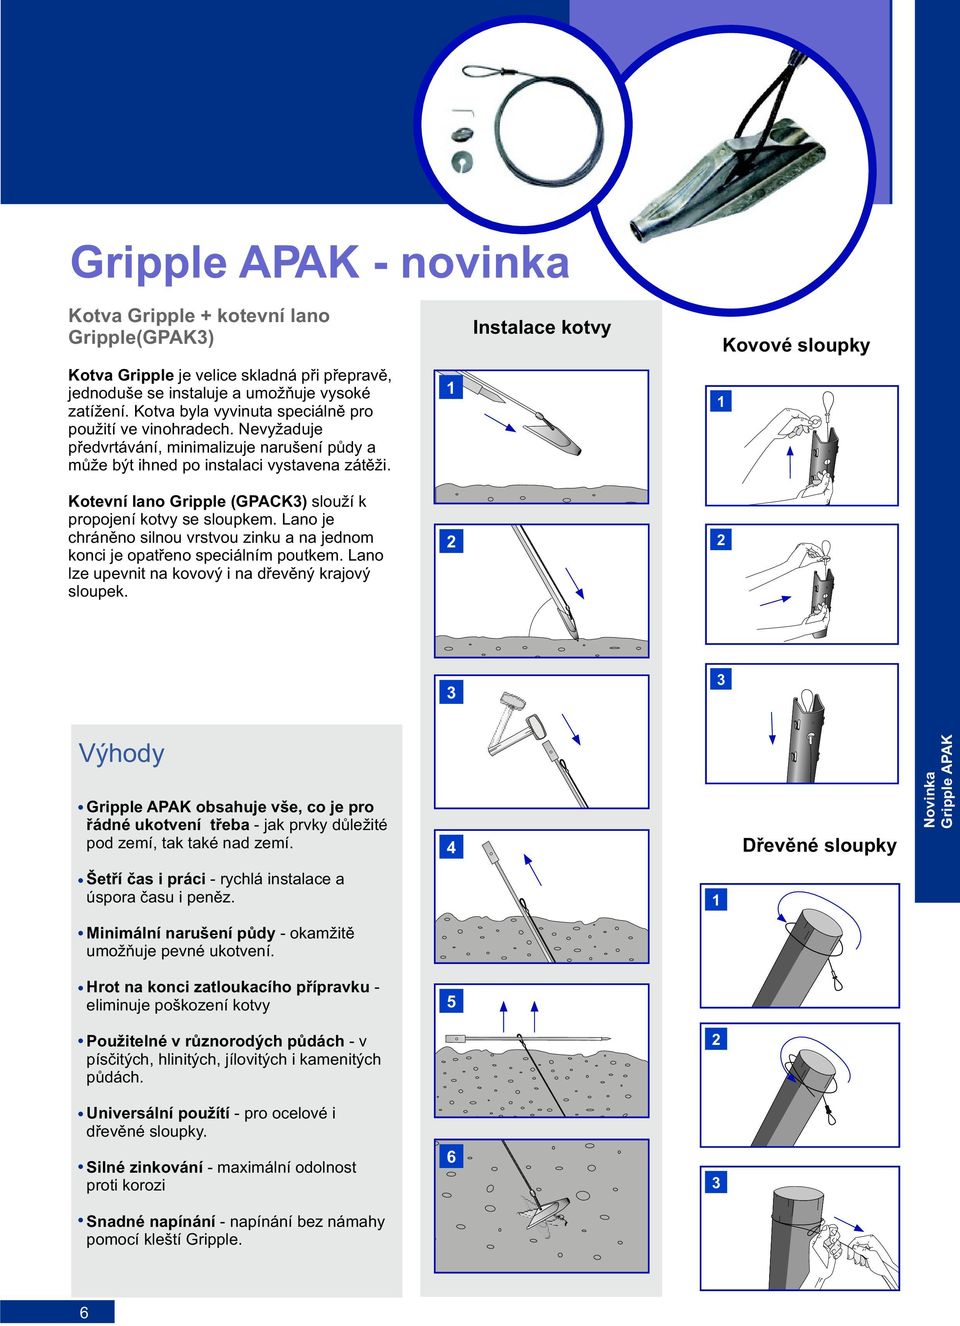 1 Instalace kotvy 1 Kovové sloupky Kotevní lano Gripple (GPACK3) slouží k propojení kotvy se sloupkem. Lano je chránìno silnou vrstvou zinku a na jednom konci je opatøeno speciálním poutkem.